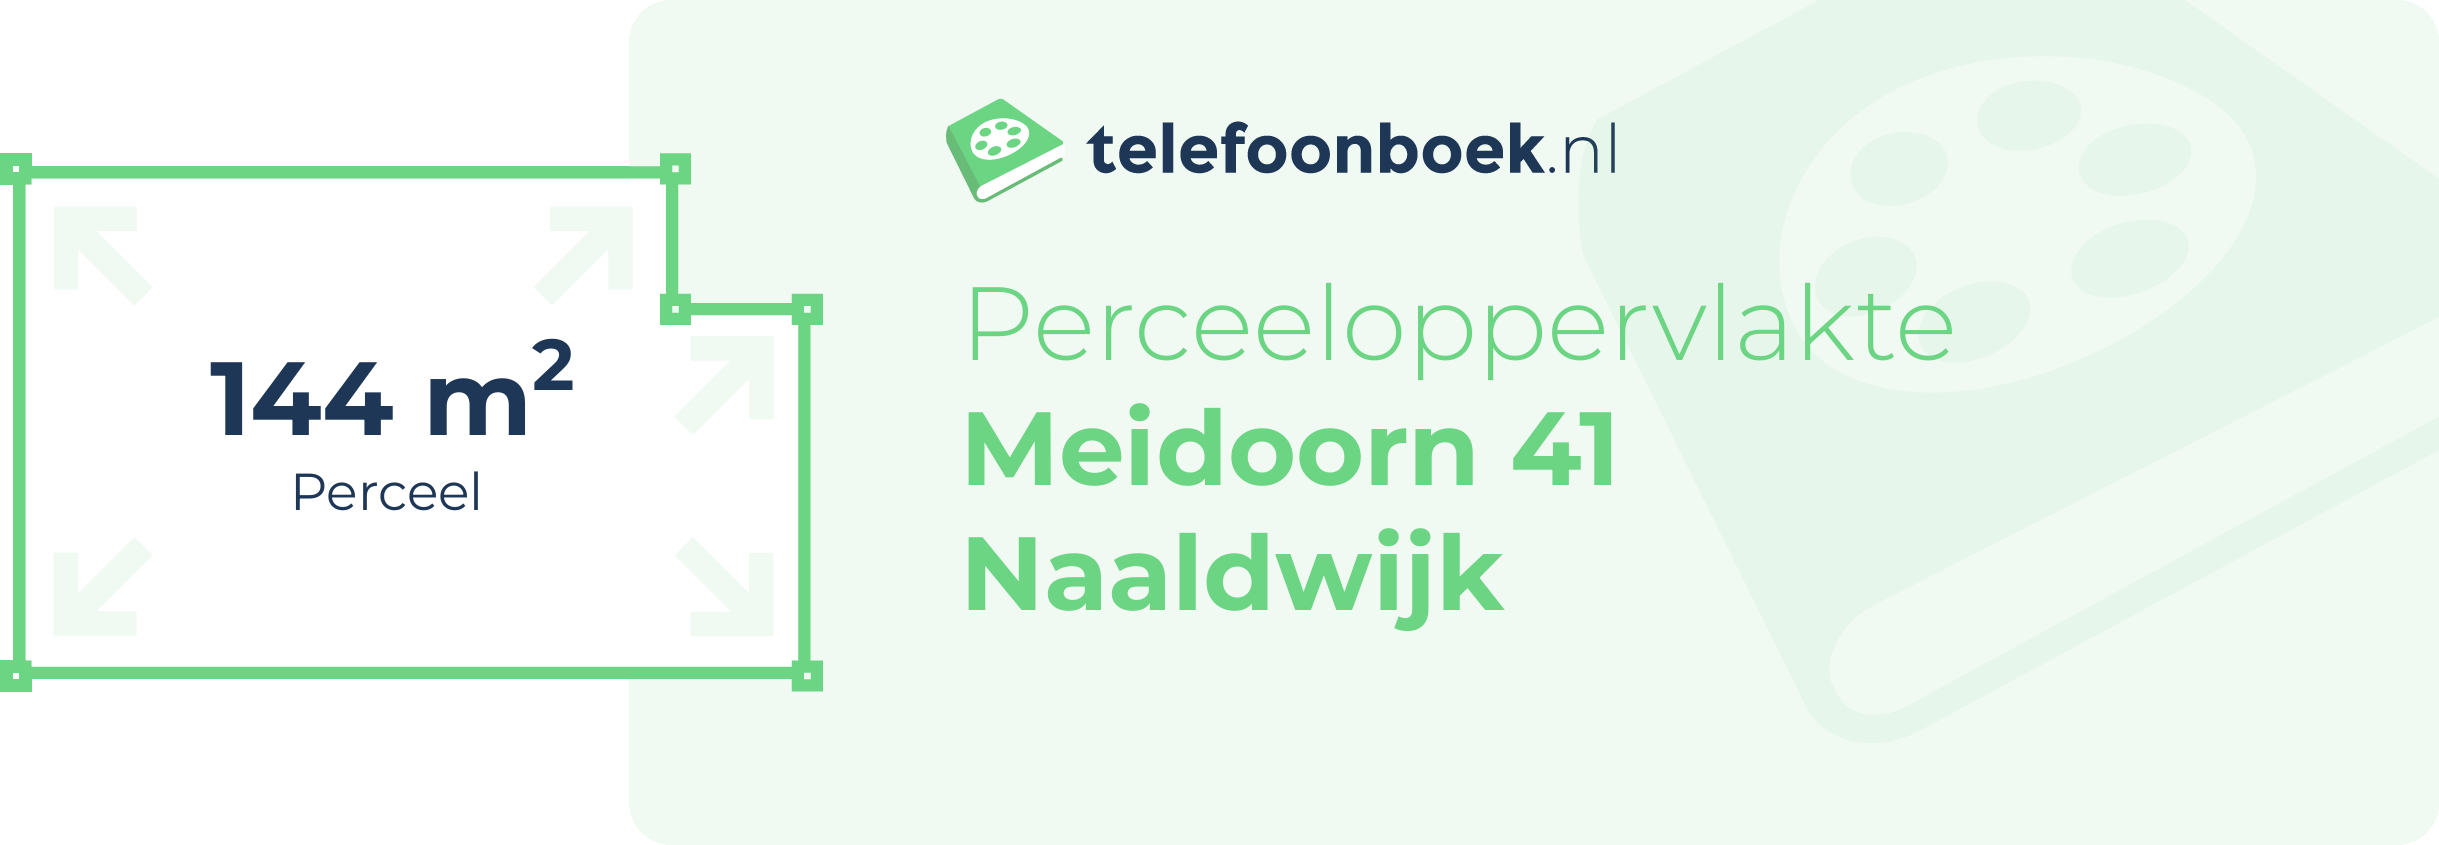 Perceeloppervlakte Meidoorn 41 Naaldwijk